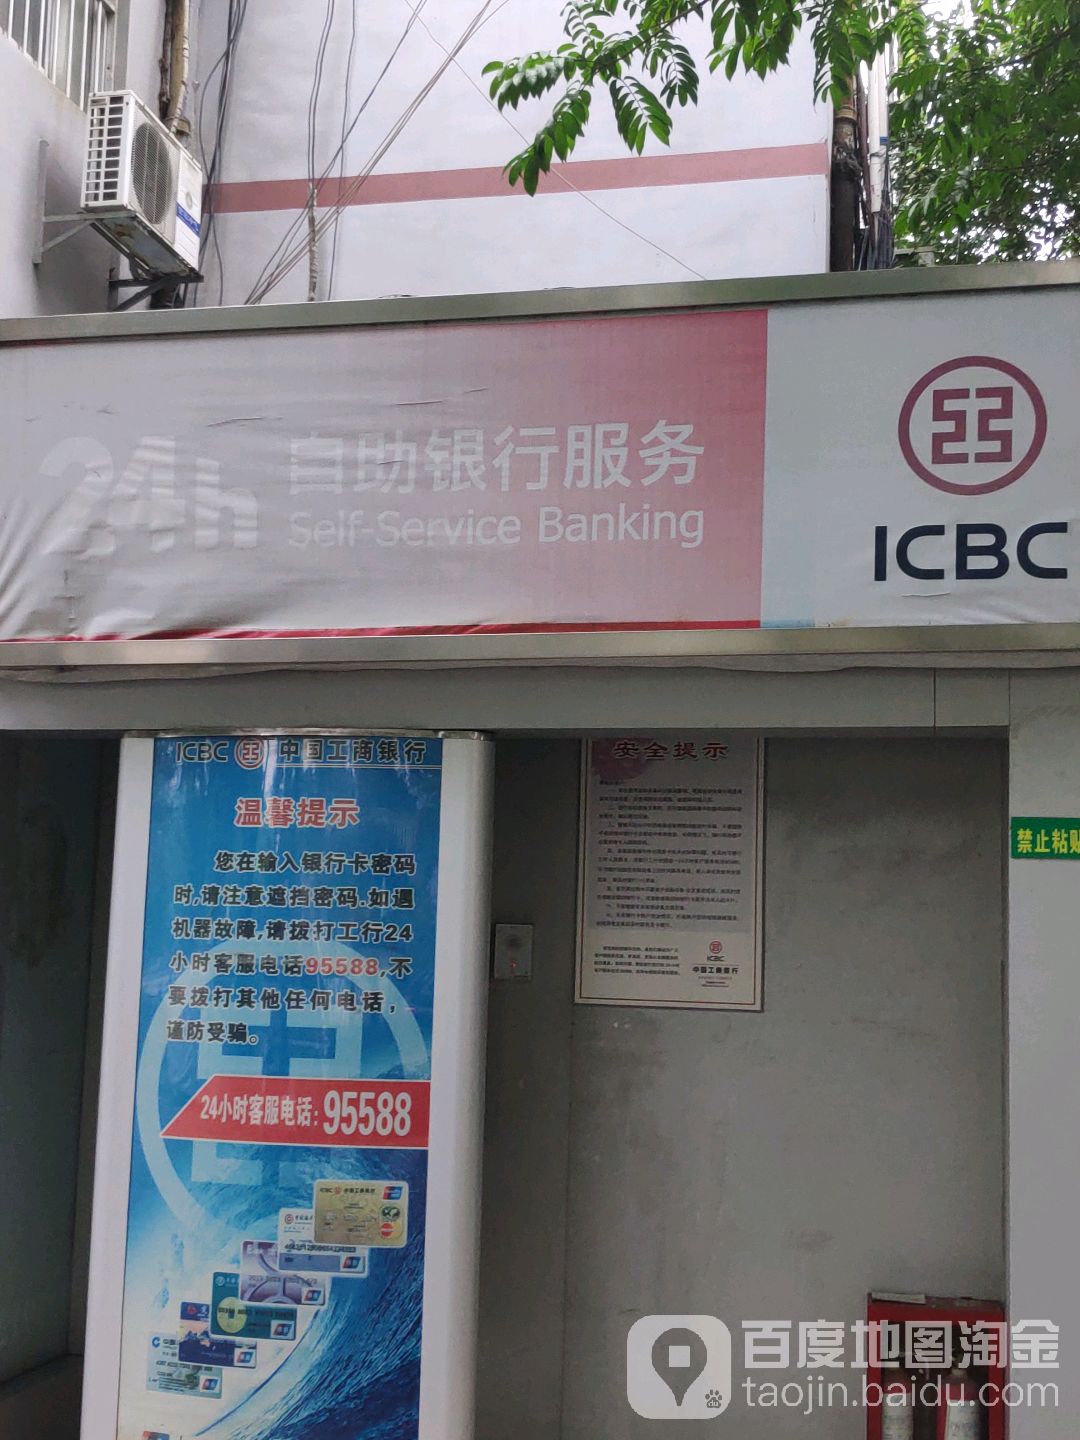 中國工商銀行24小時自助銀行(廣西師范學院長堽校區)